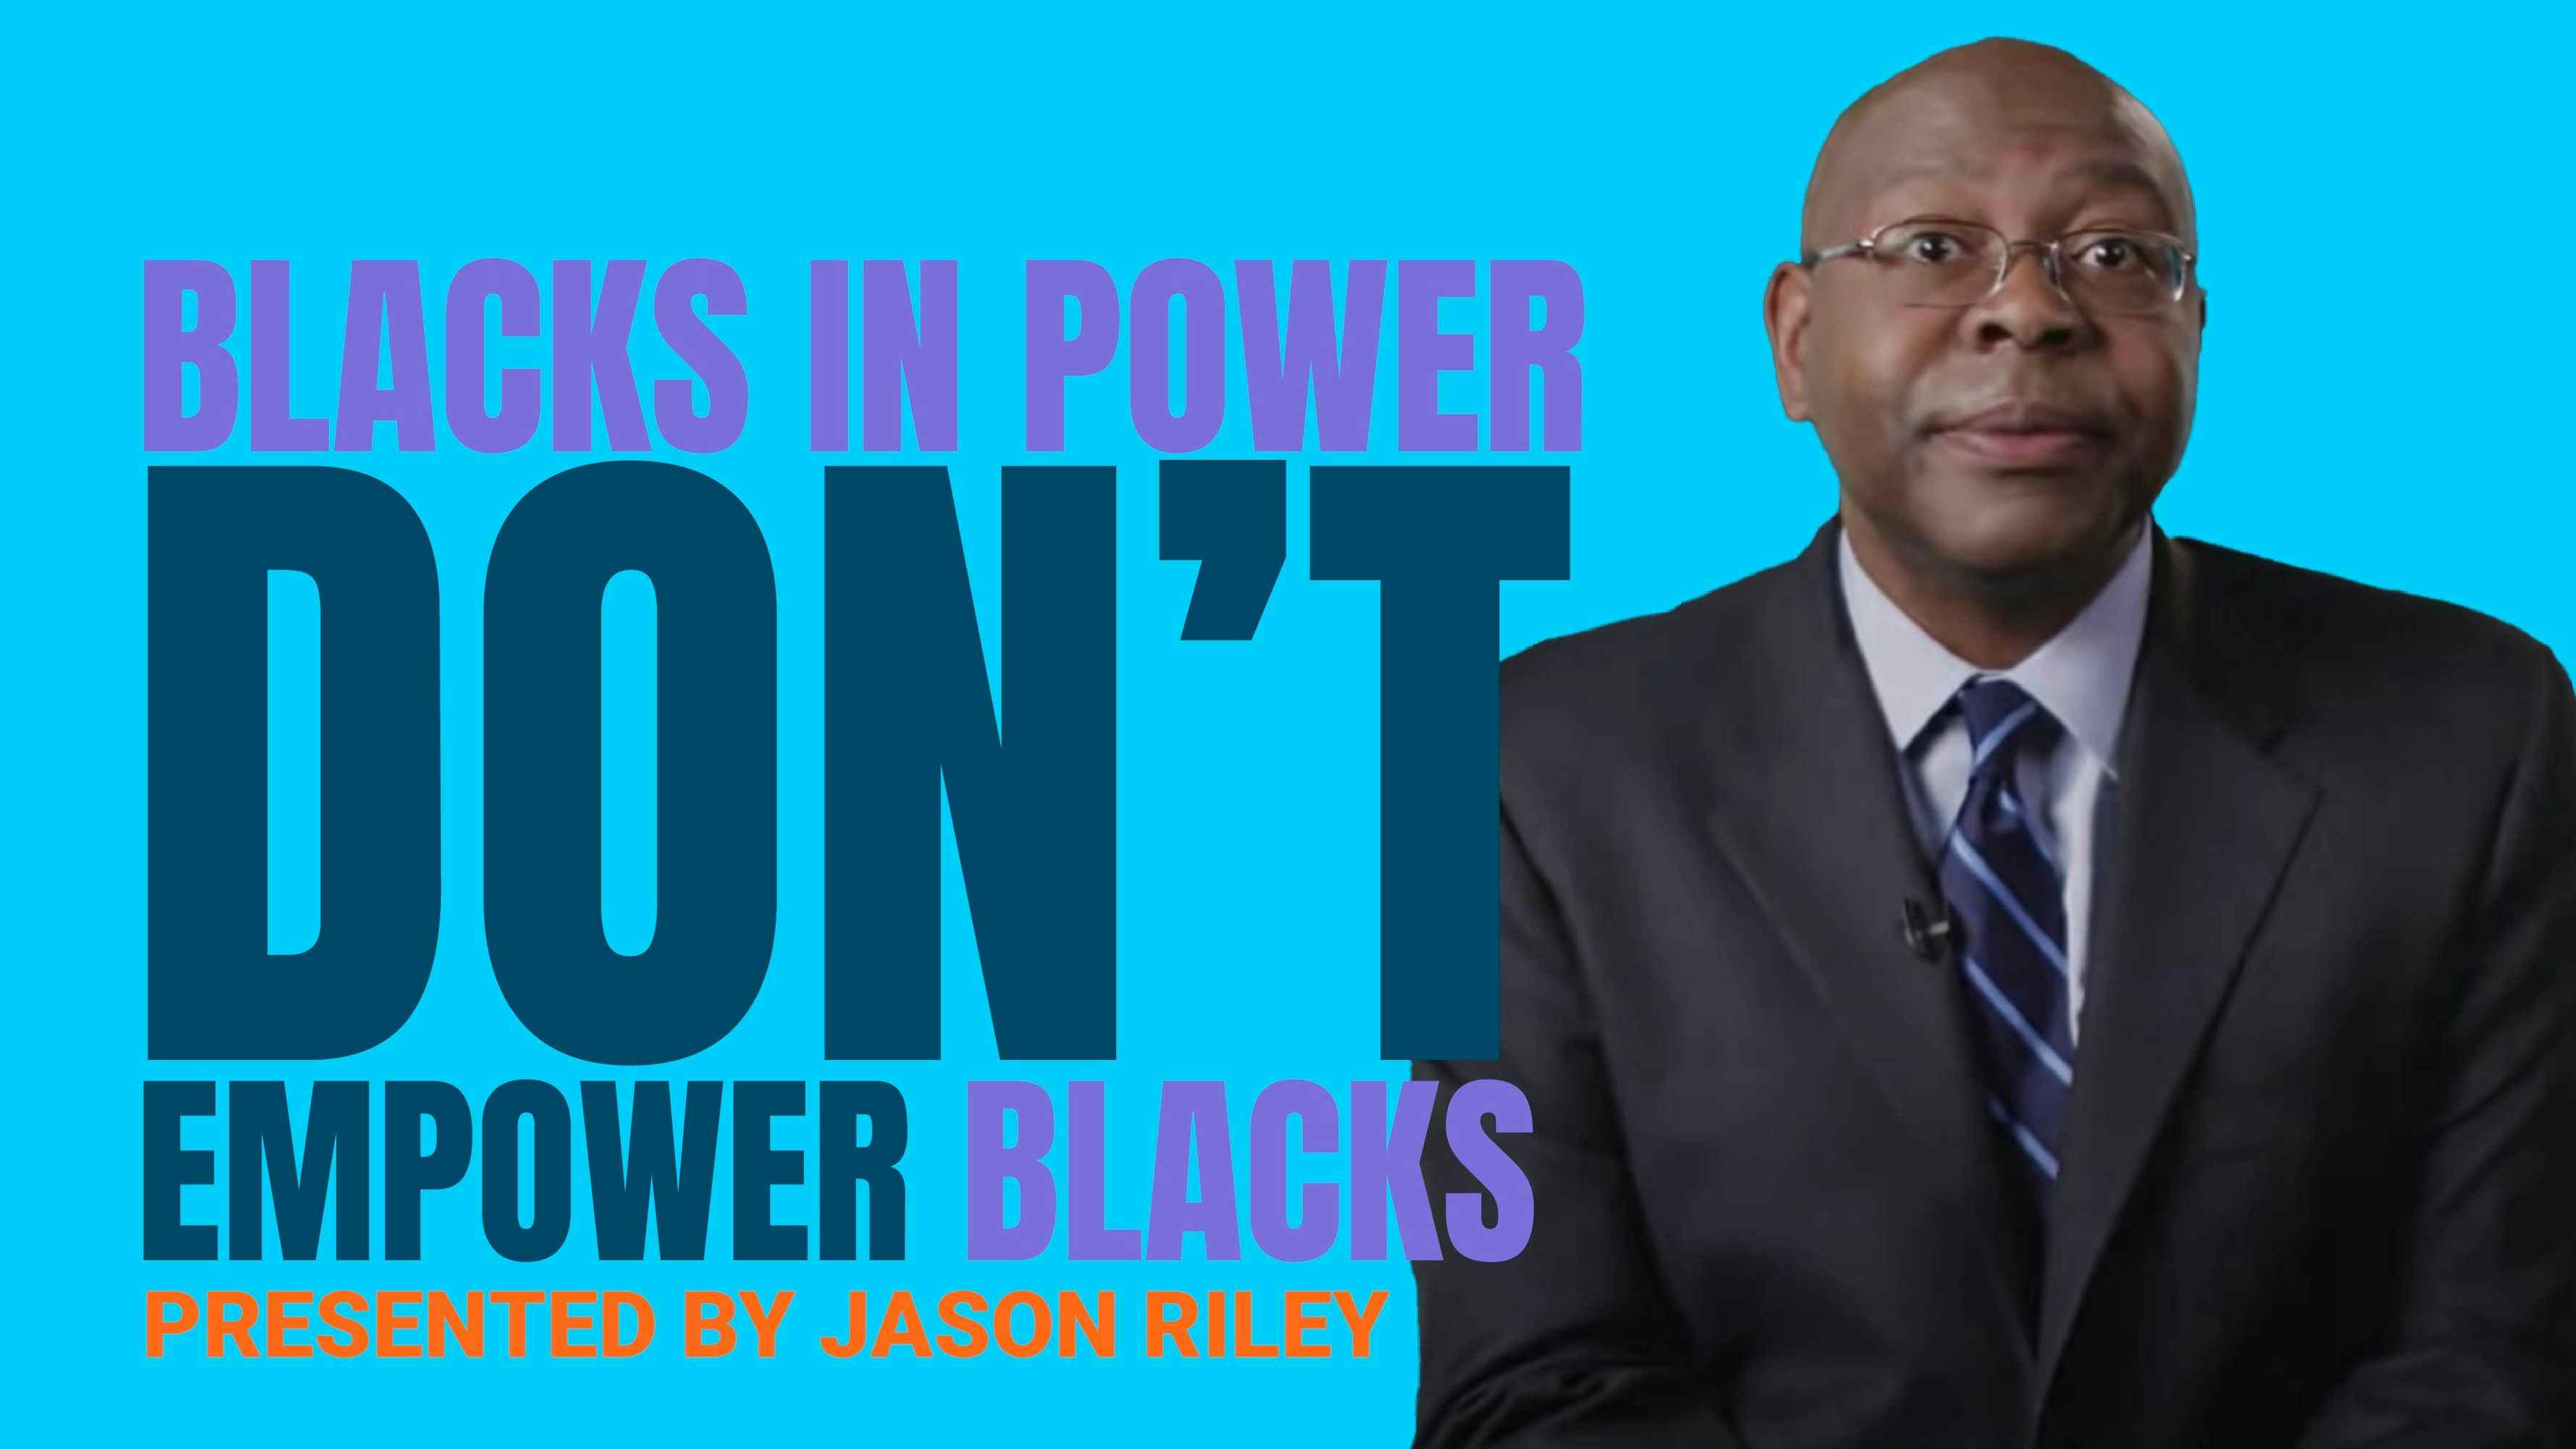 Blacks in Power Don't Empower Blacks